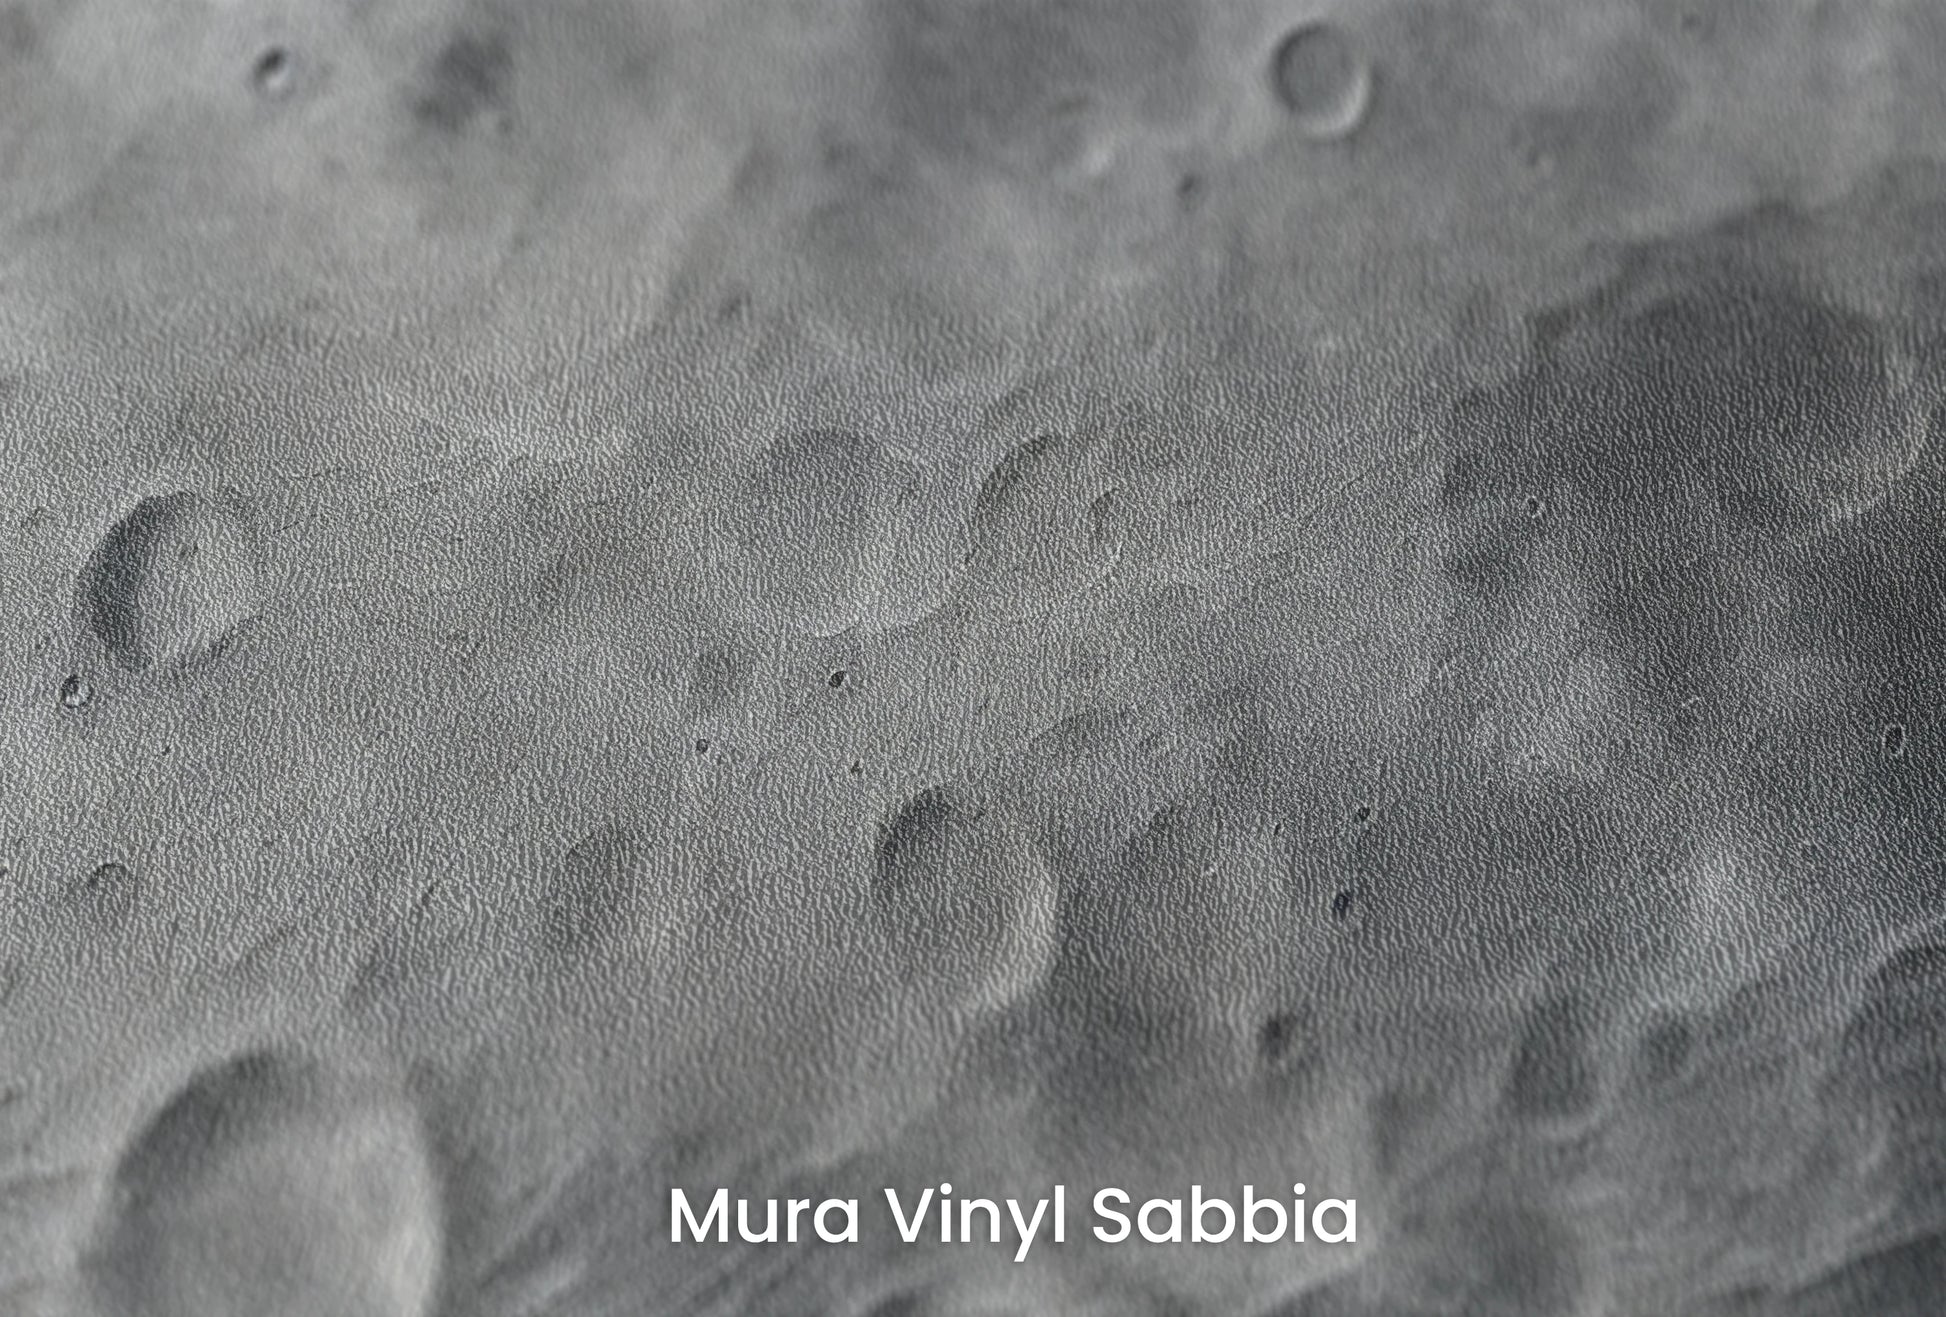 Zbliżenie na artystyczną fototapetę o nazwie Nebular Storm na podłożu Mura Vinyl Sabbia struktura grubego ziarna piasku.